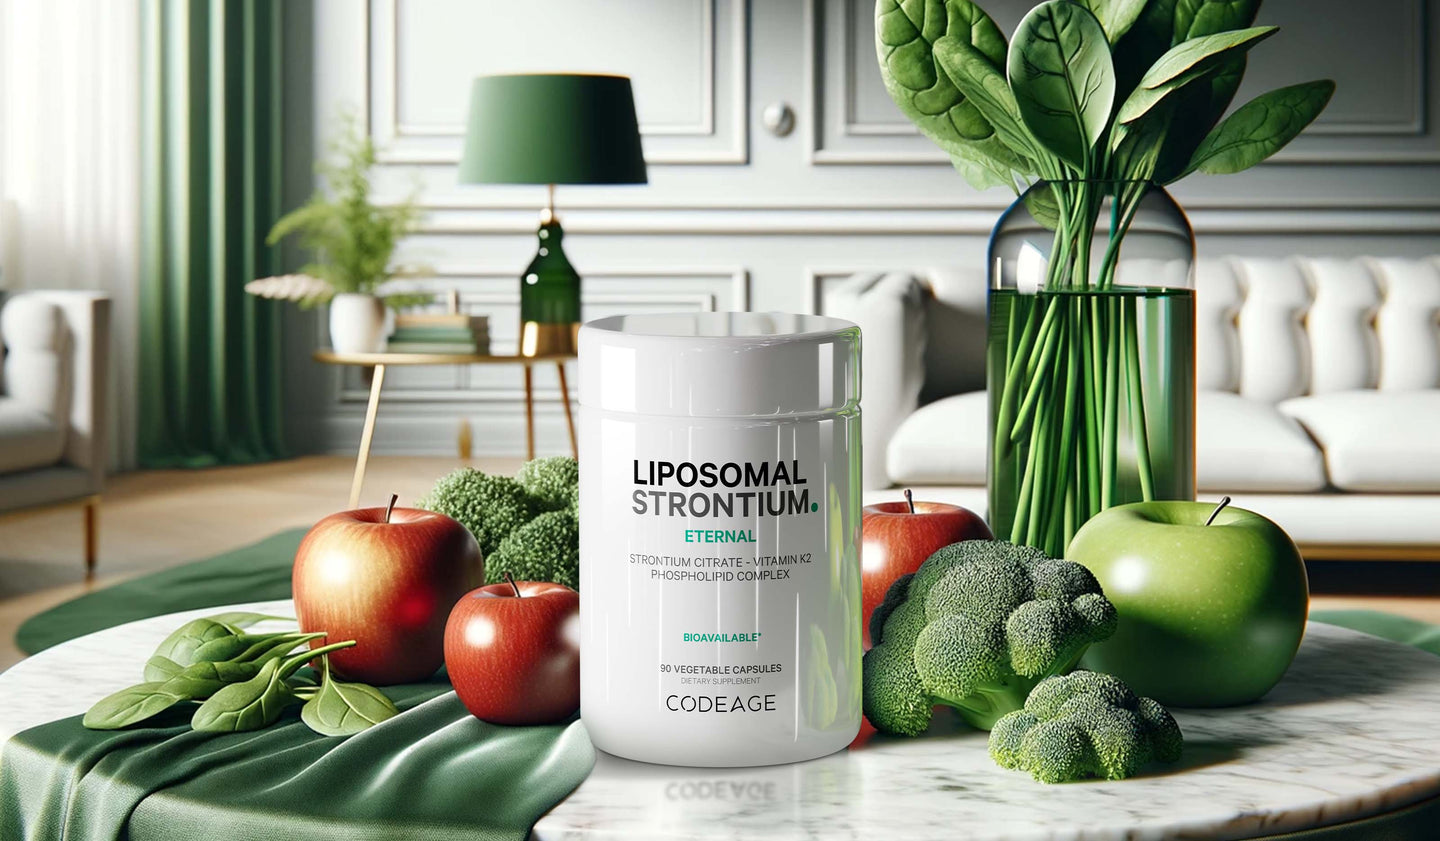 Codeage Liposomal Strontium Supplement